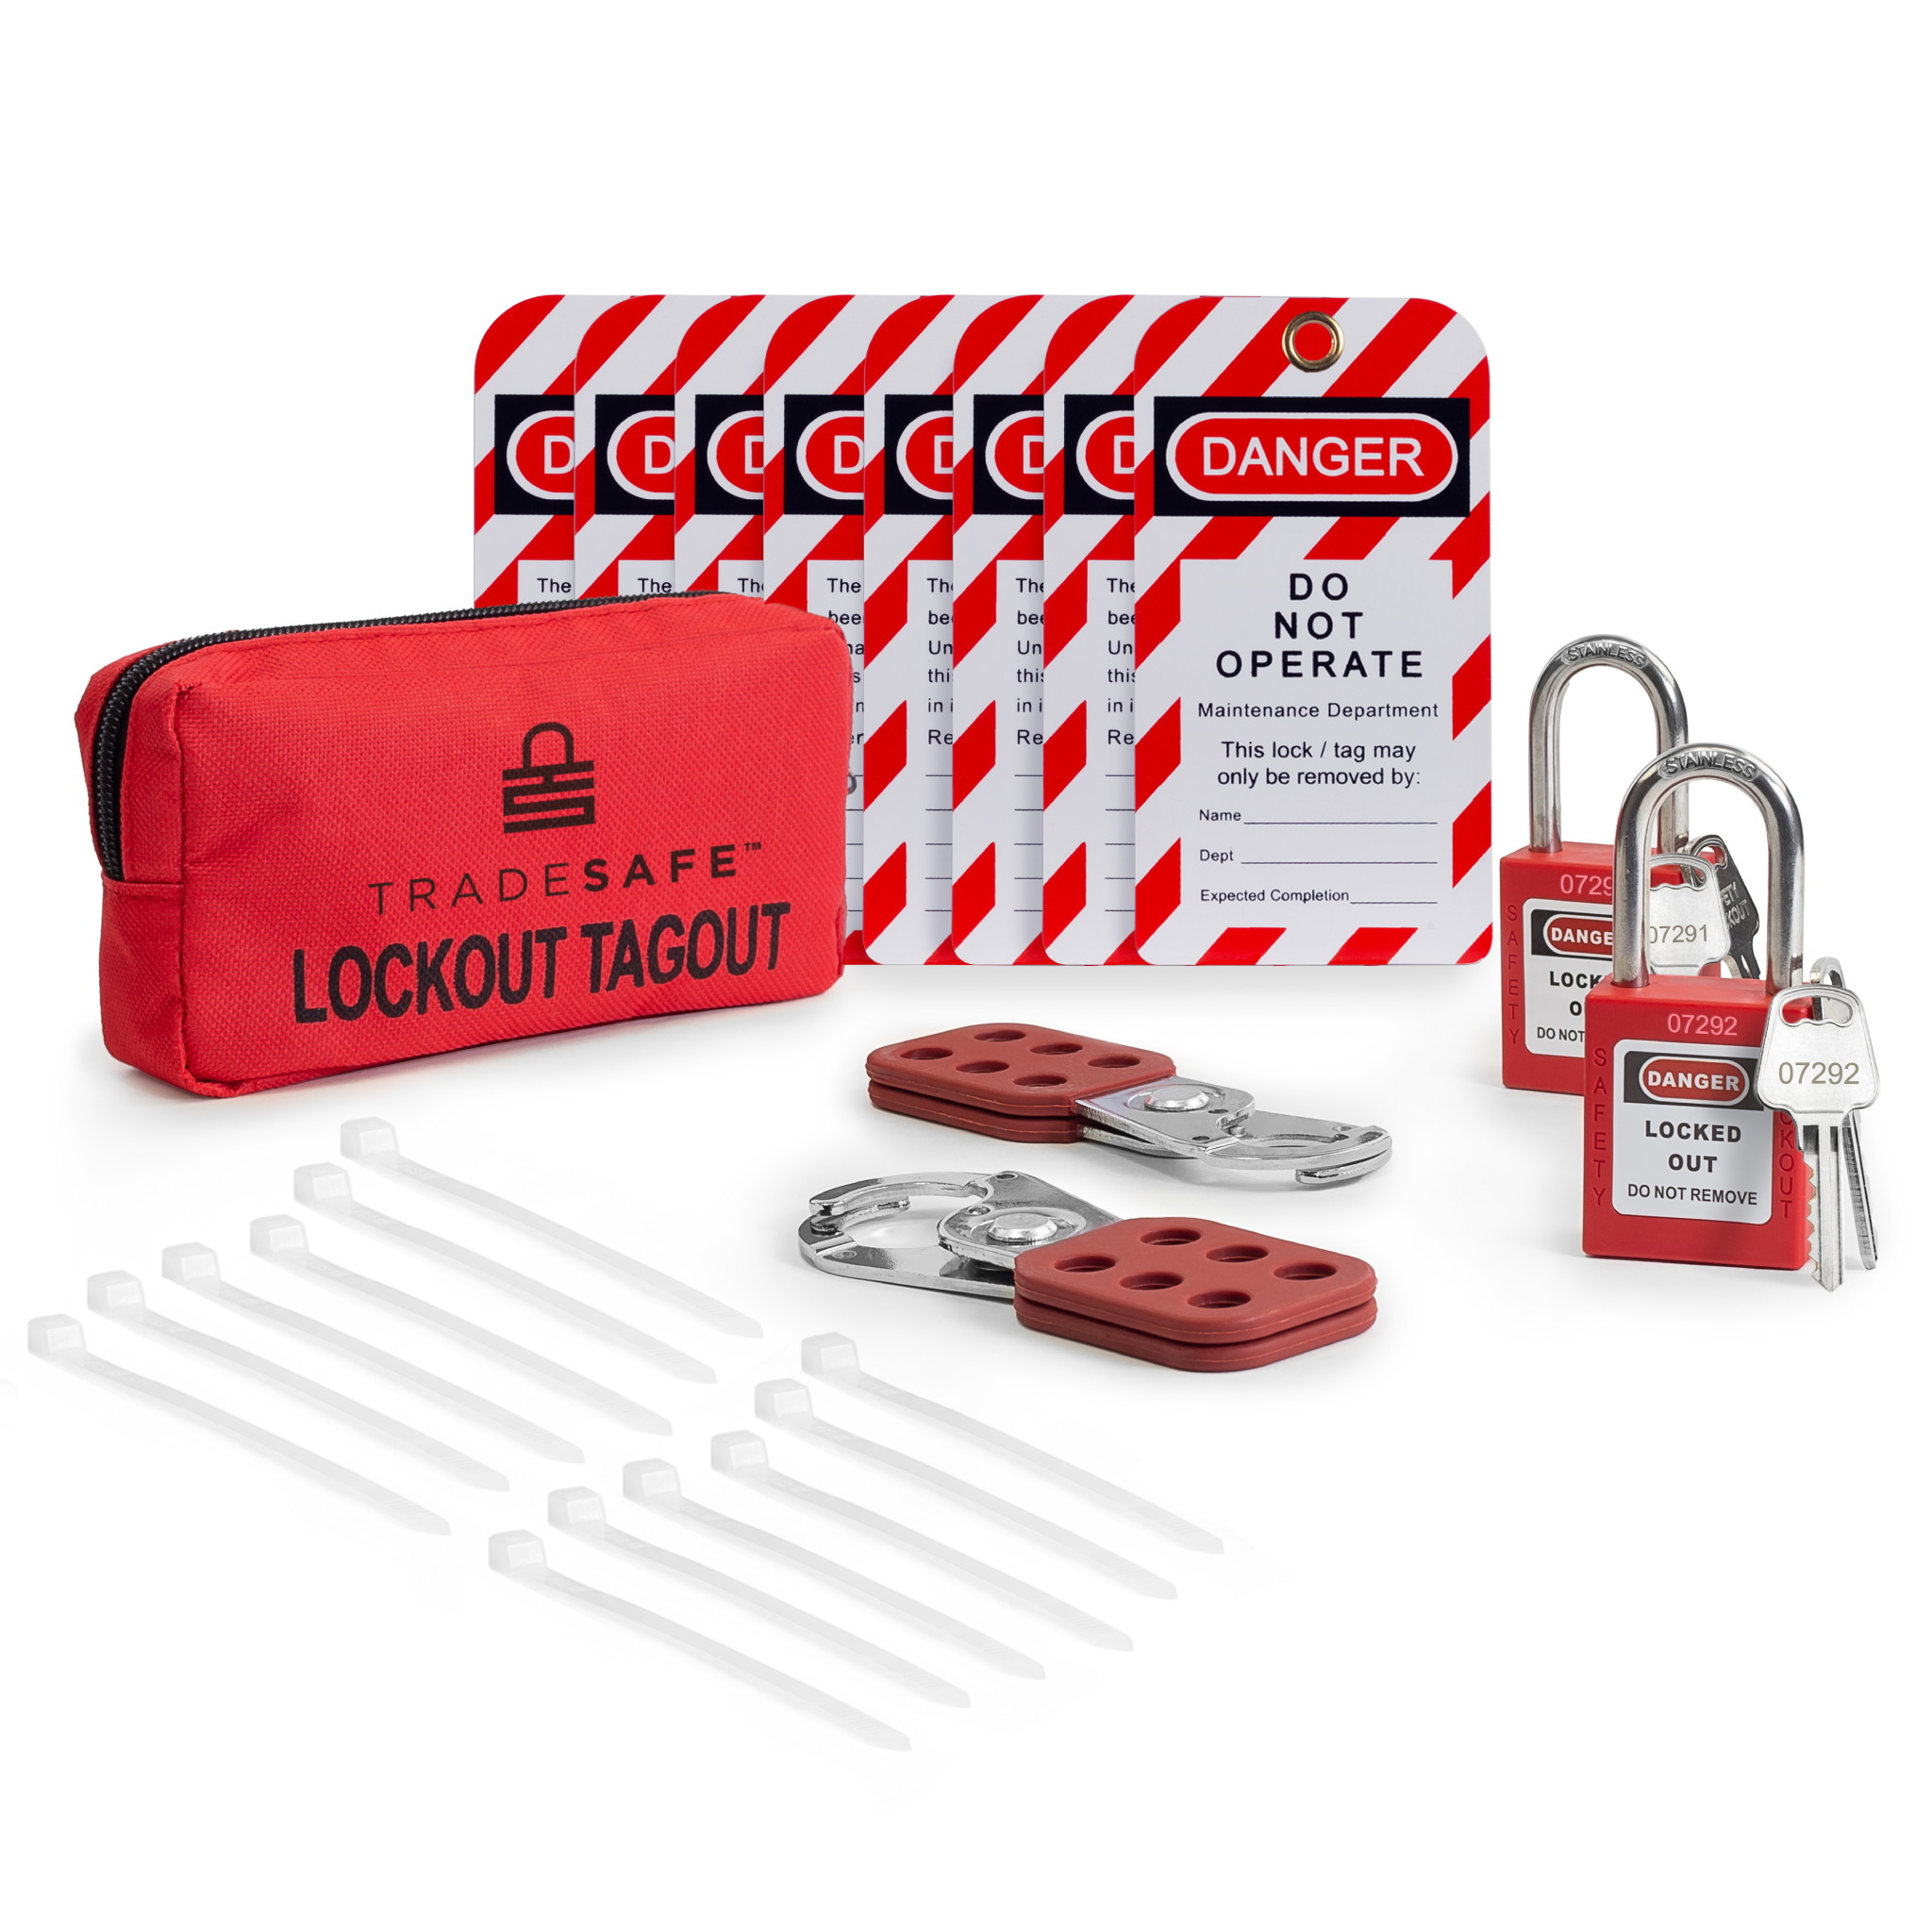 Personal Lockout Tagout Kit – 2 Keys Per Lock